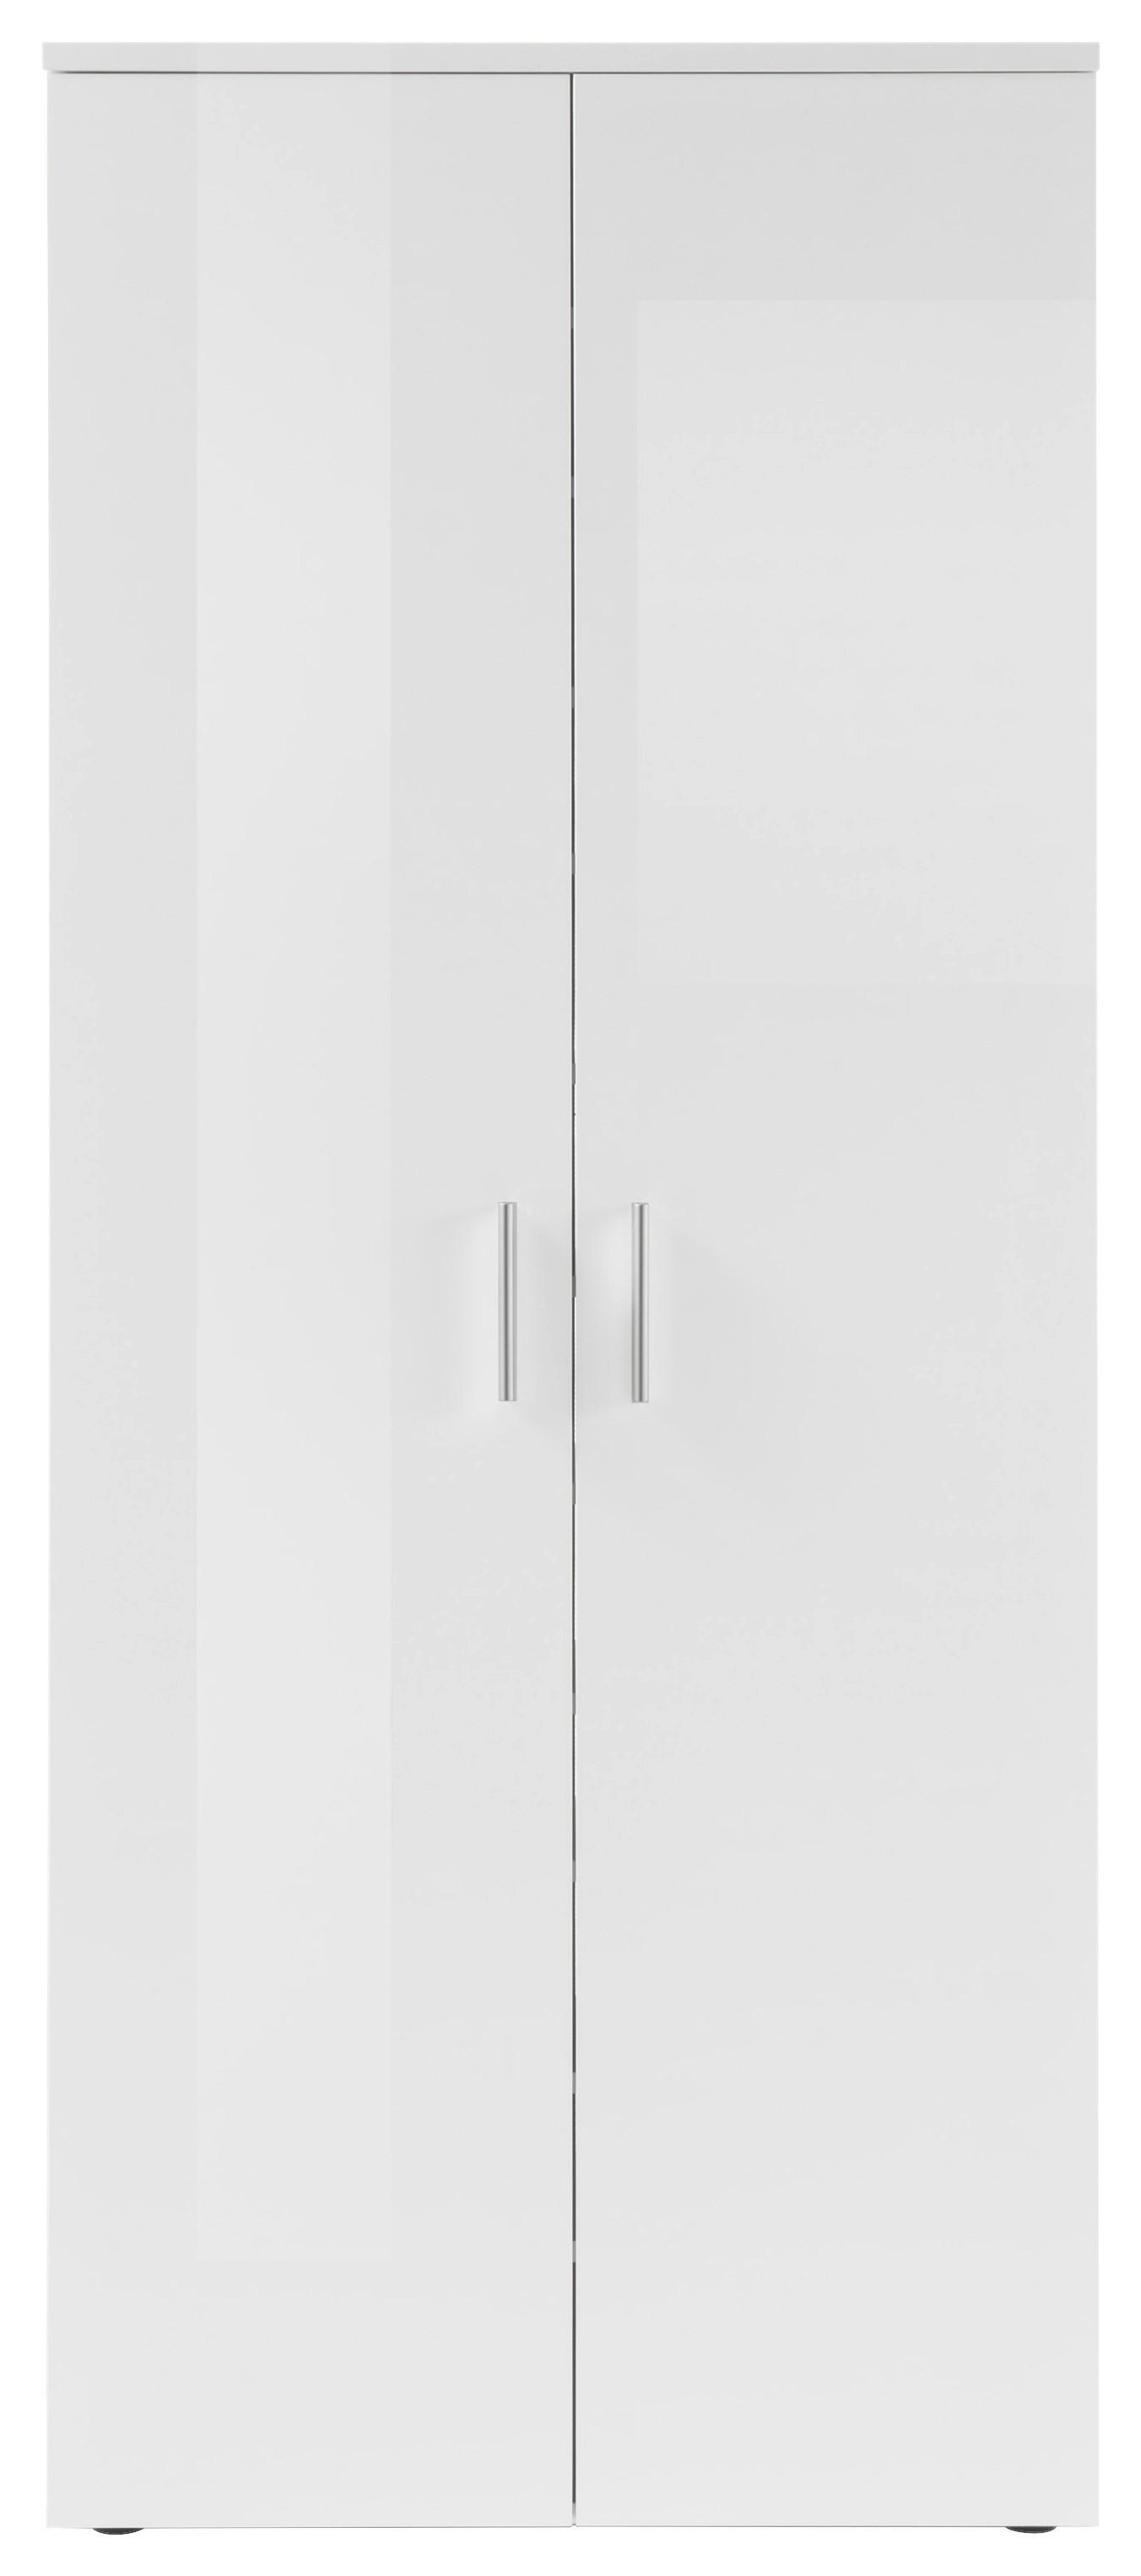 SCHUHSCHRANK 80/190/35 cm  - Weiss/Silberfarben, Design, Holzwerkstoff/Kunststoff (80/190/35cm) - MID.YOU